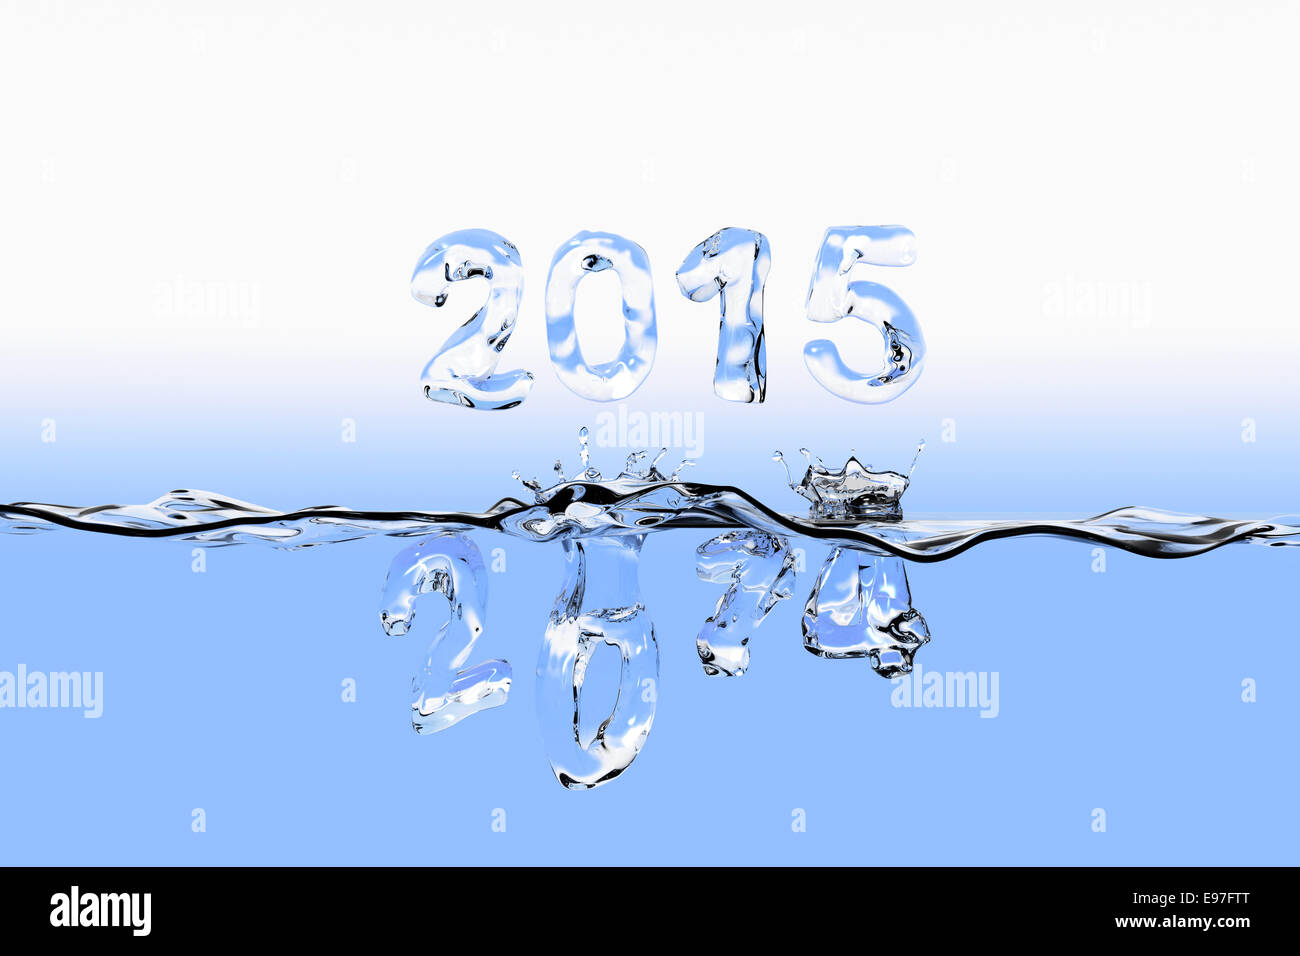 Superficie di acqua con 2014 cifre schizzi in acqua e 2015 galleggiante sopra la superficie. Tutti i numeri di telefono vengono visualizzati come fatto di acqua Foto Stock